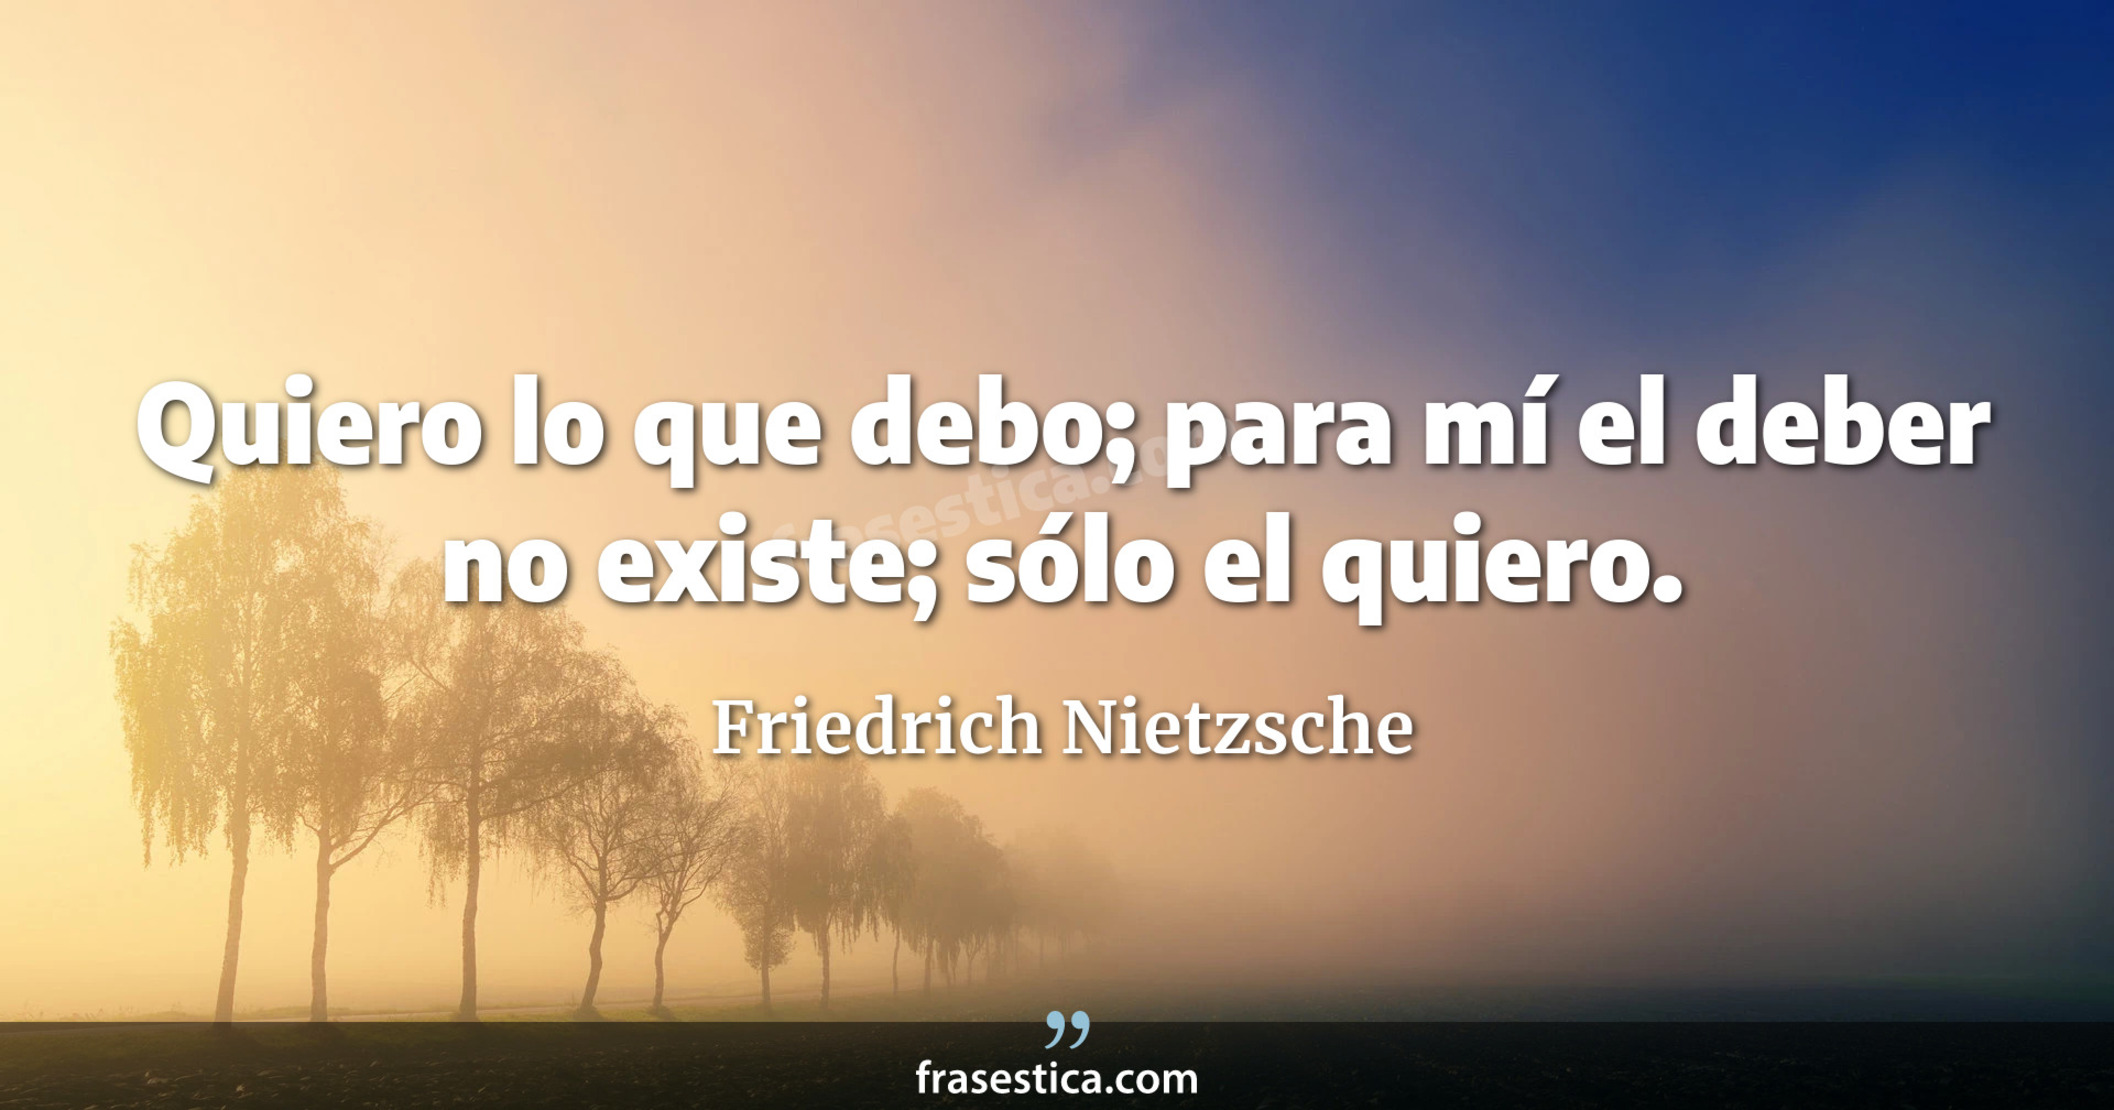 Quiero lo que debo; para mí el deber no existe; sólo el quiero. - Friedrich Nietzsche